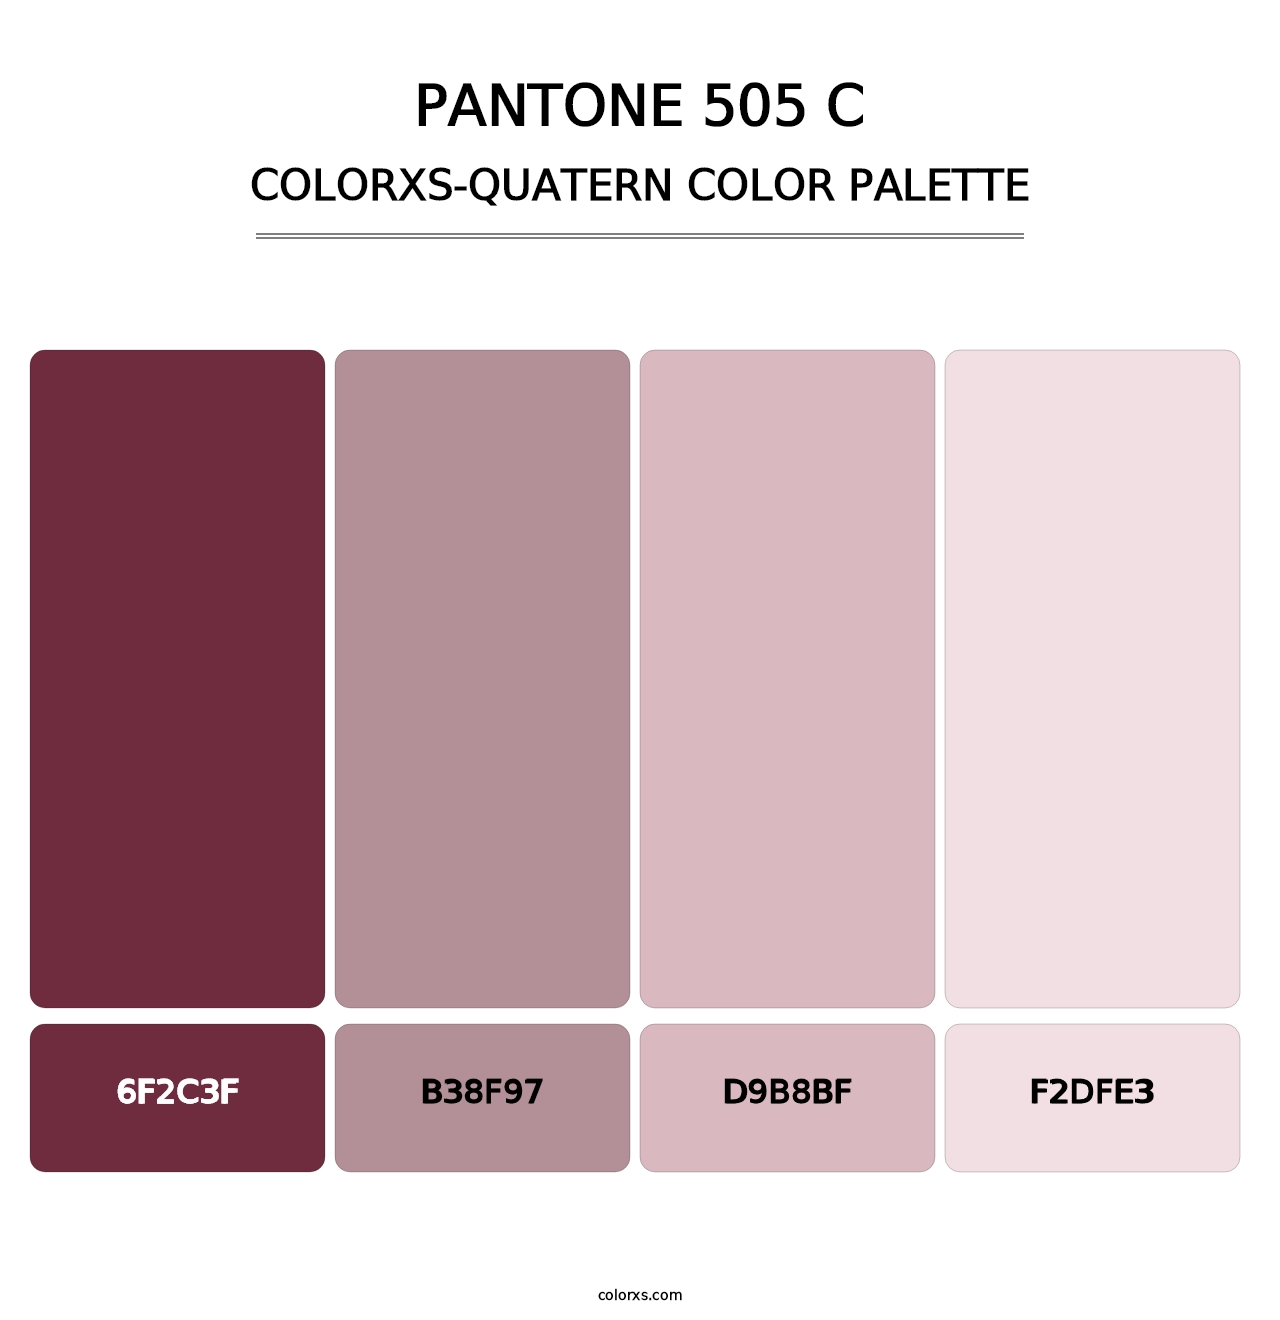 PANTONE 505 C - Colorxs Quatern Palette